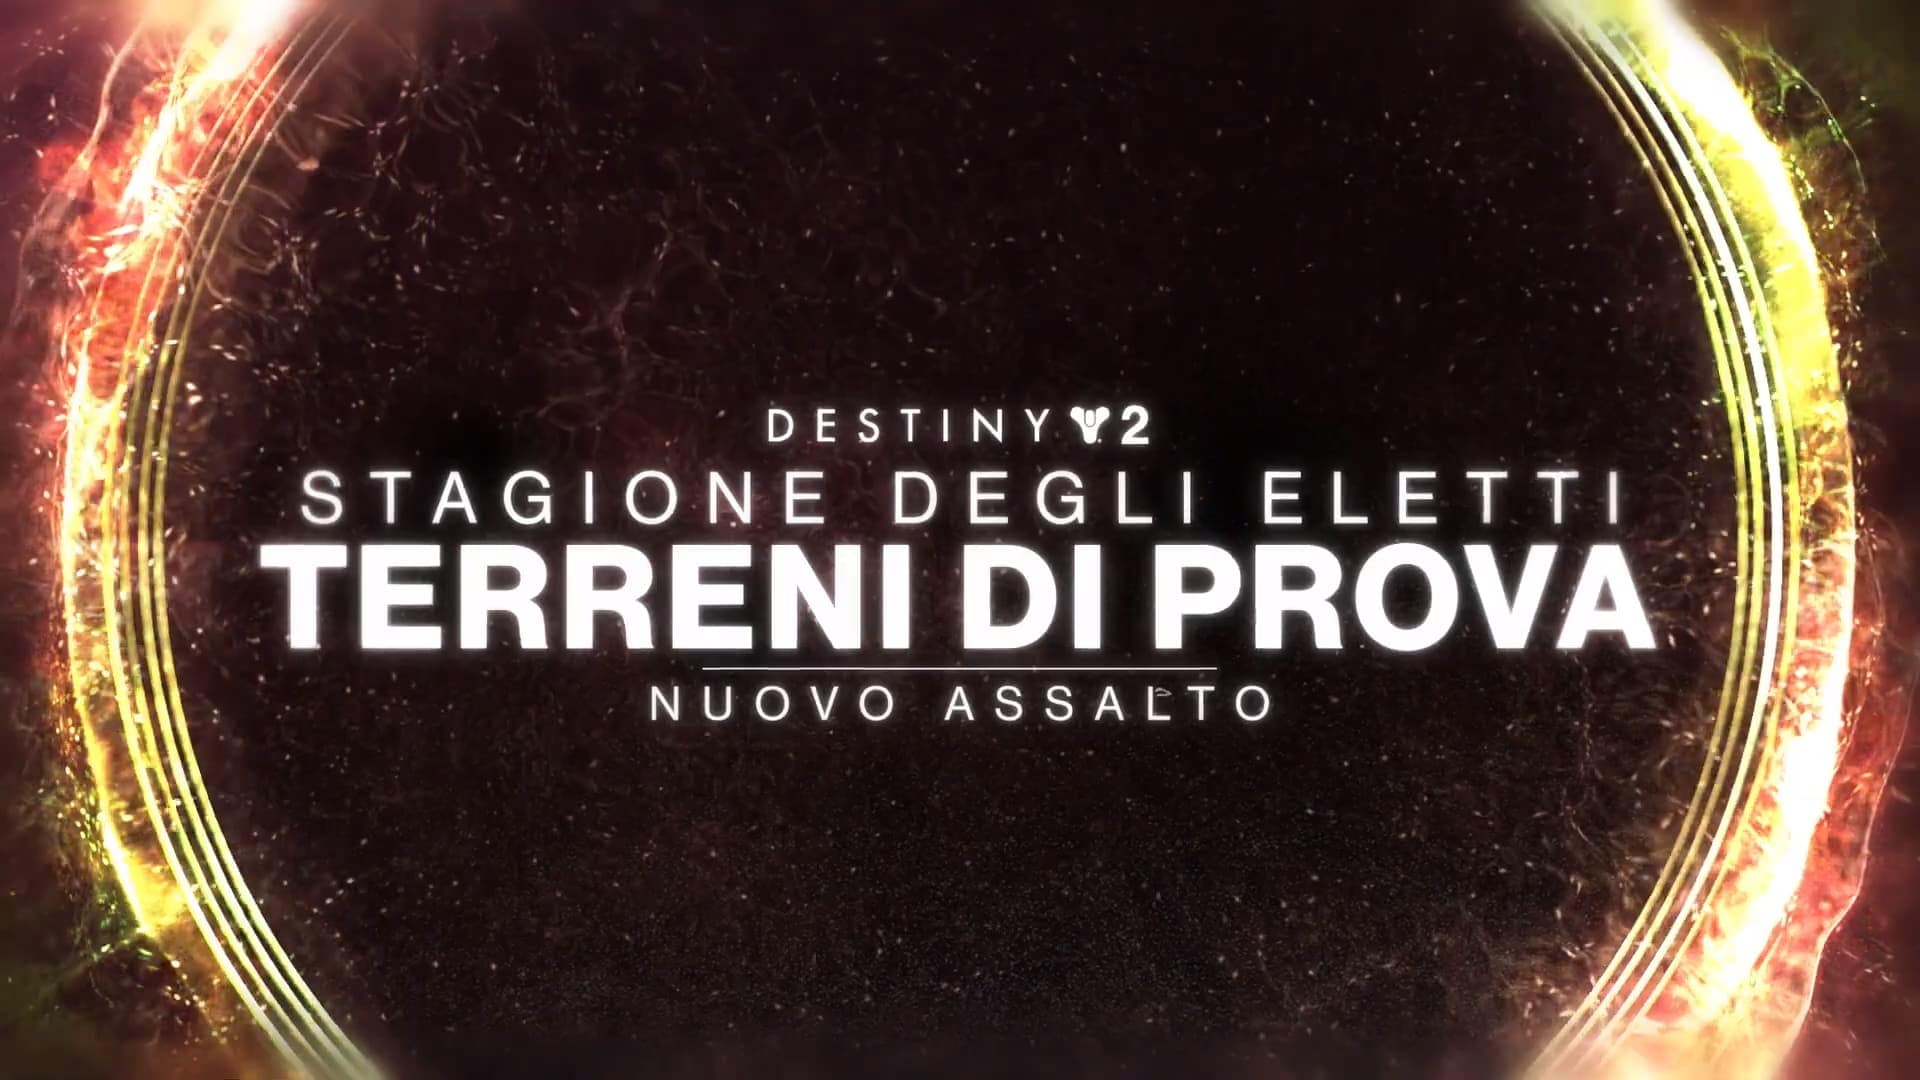 Ecco Terreni di Prova, un nuovo assalto per Destiny 2: La Stagione degli Eletti (video)